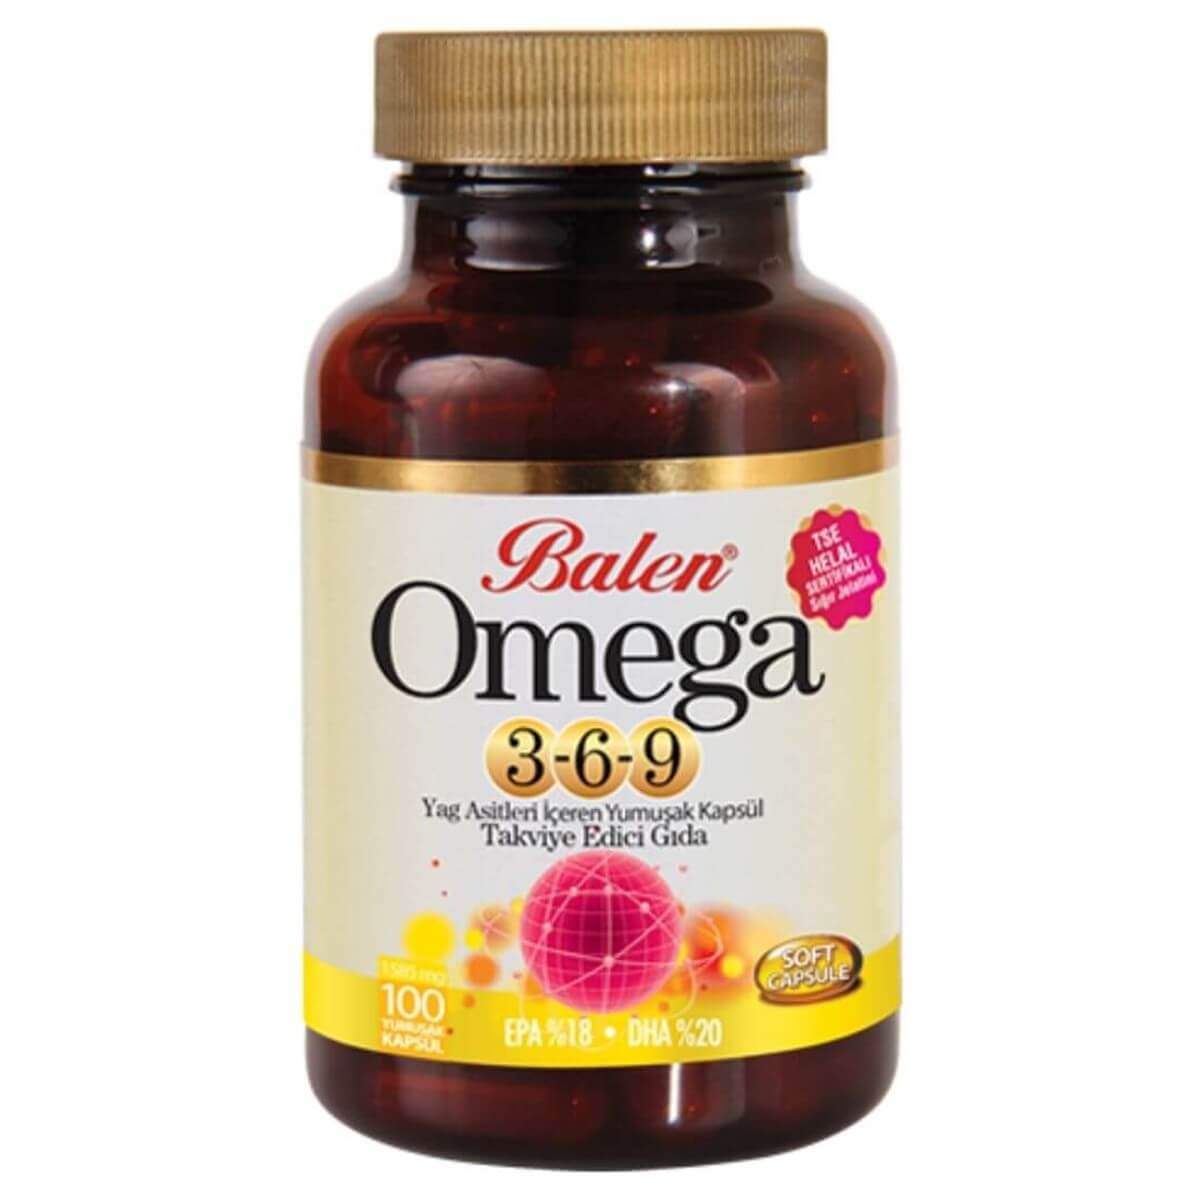 Balen Omega 3-6-9 Yumuşak Kapsül - 100 Kapsül X 1585 mg